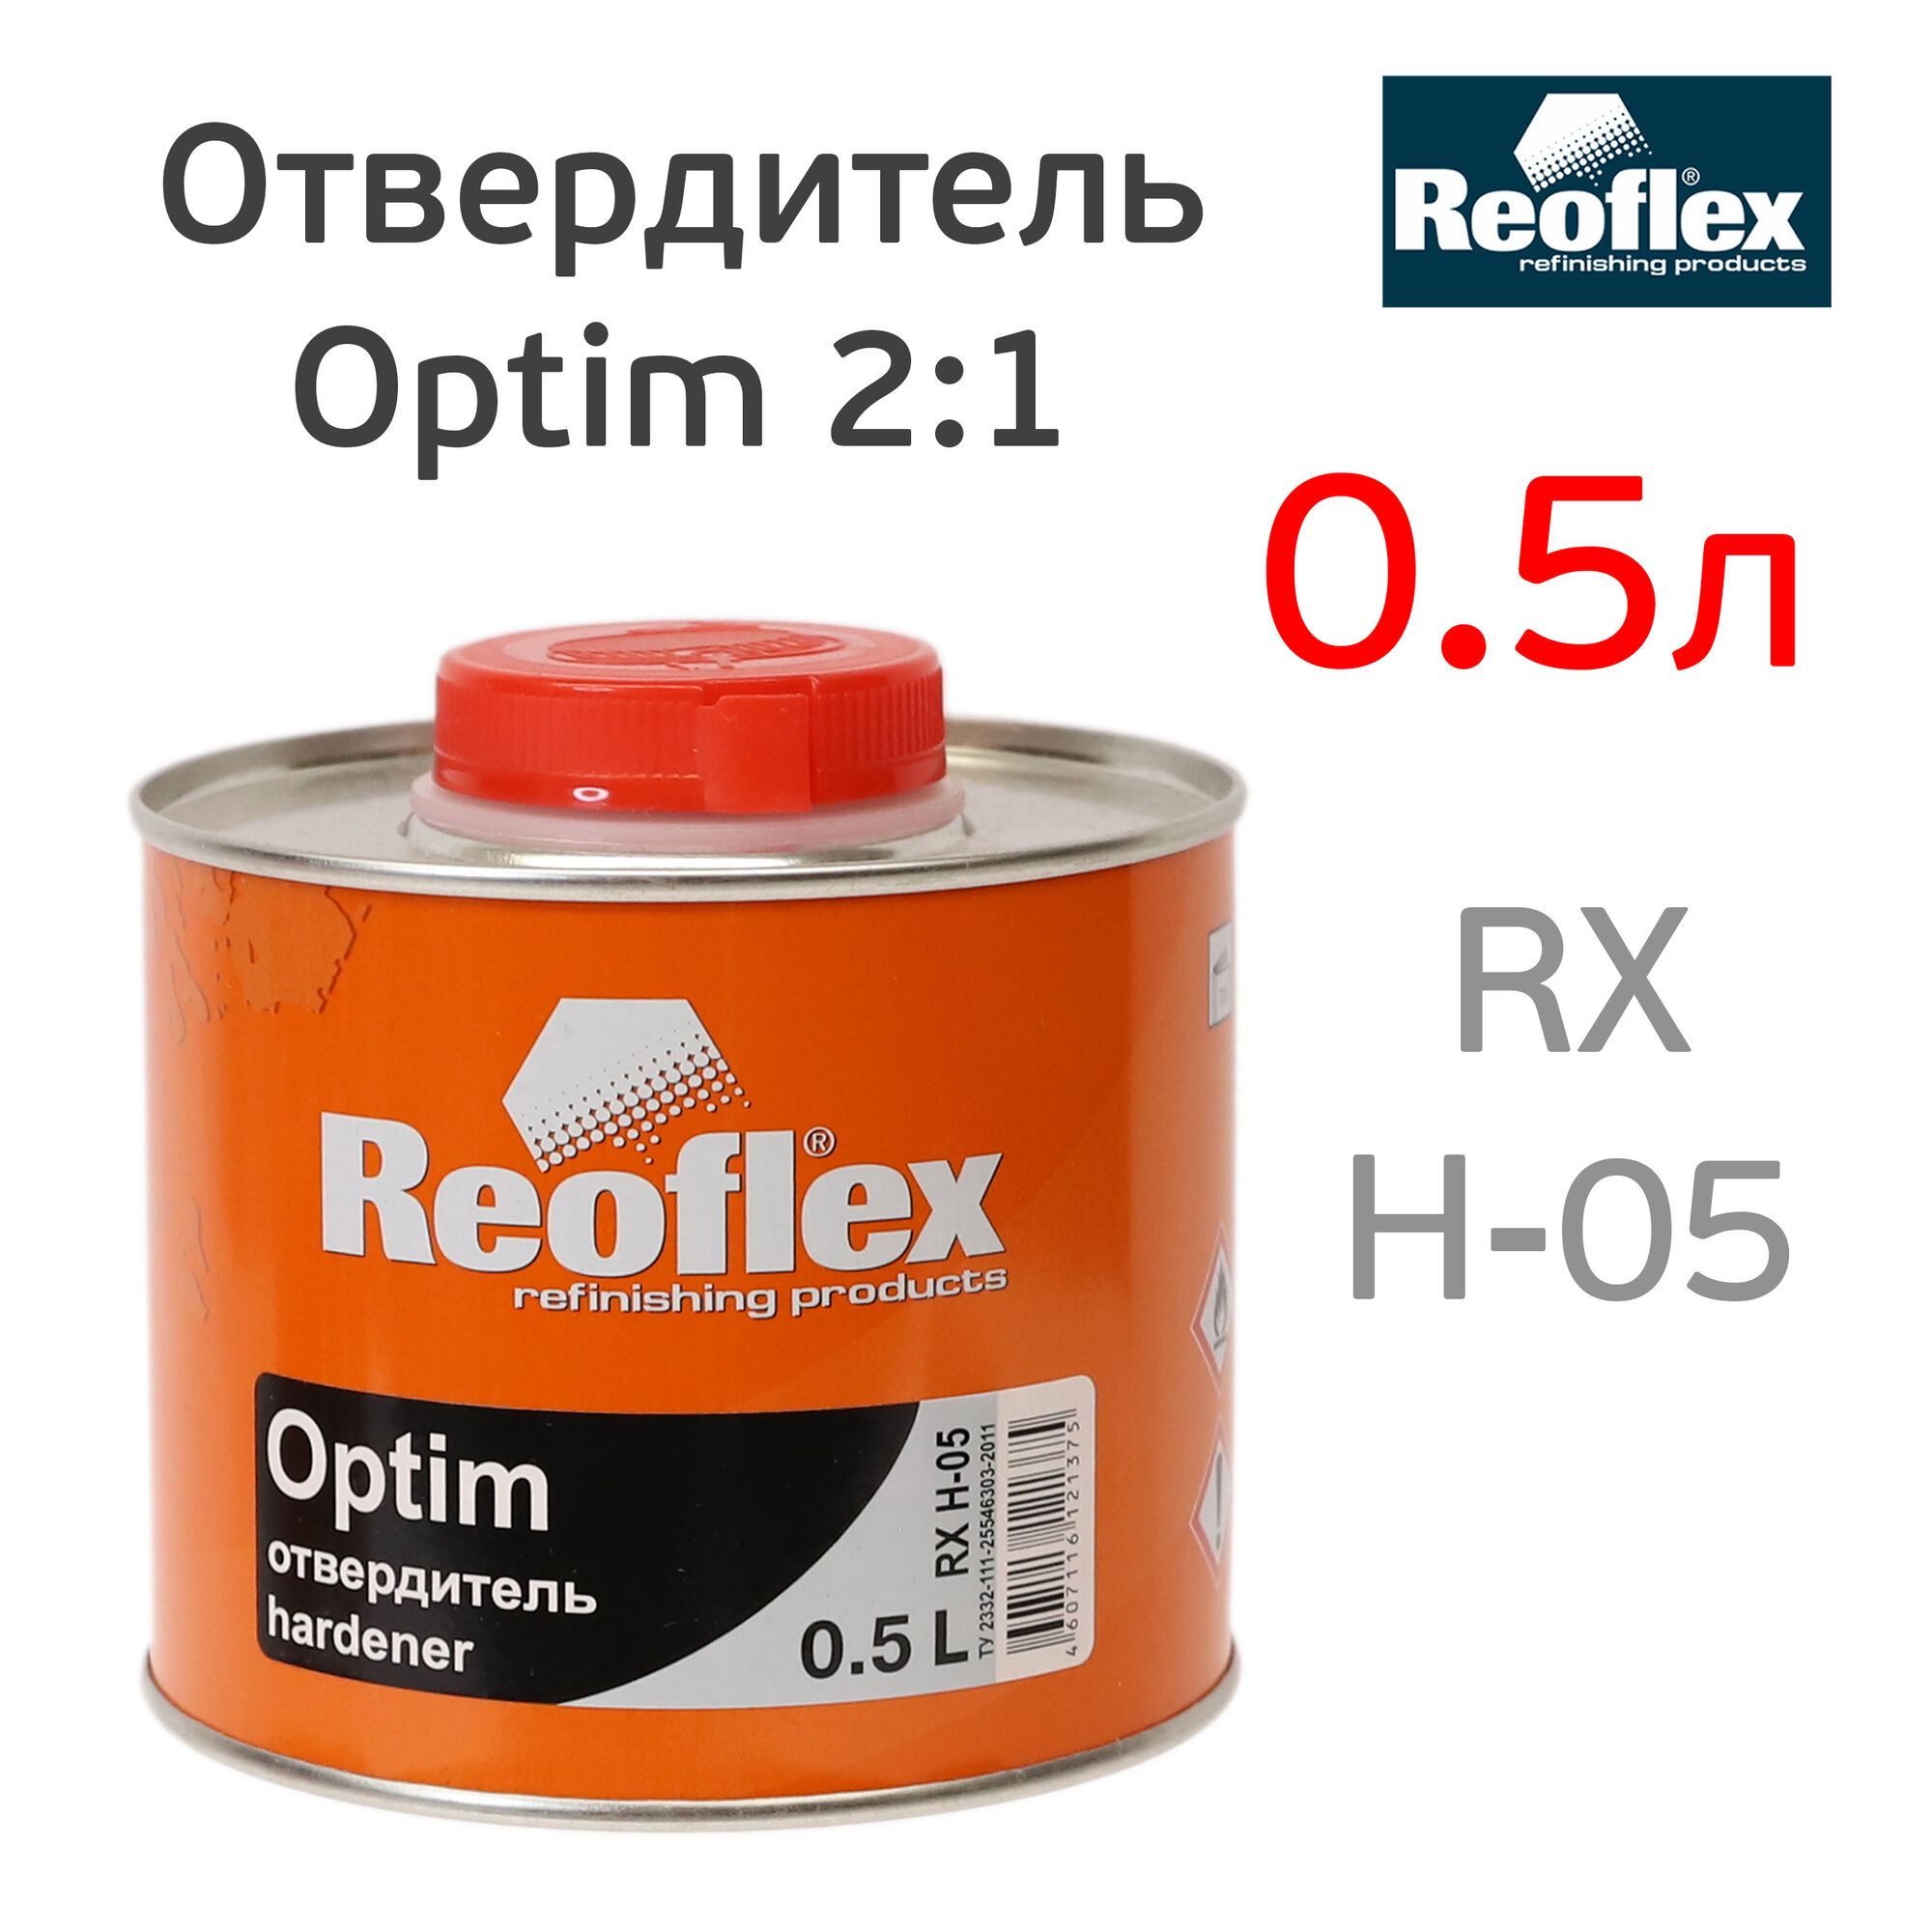 Отвердитель Reoflex Optim (0,5л) для лака, краски